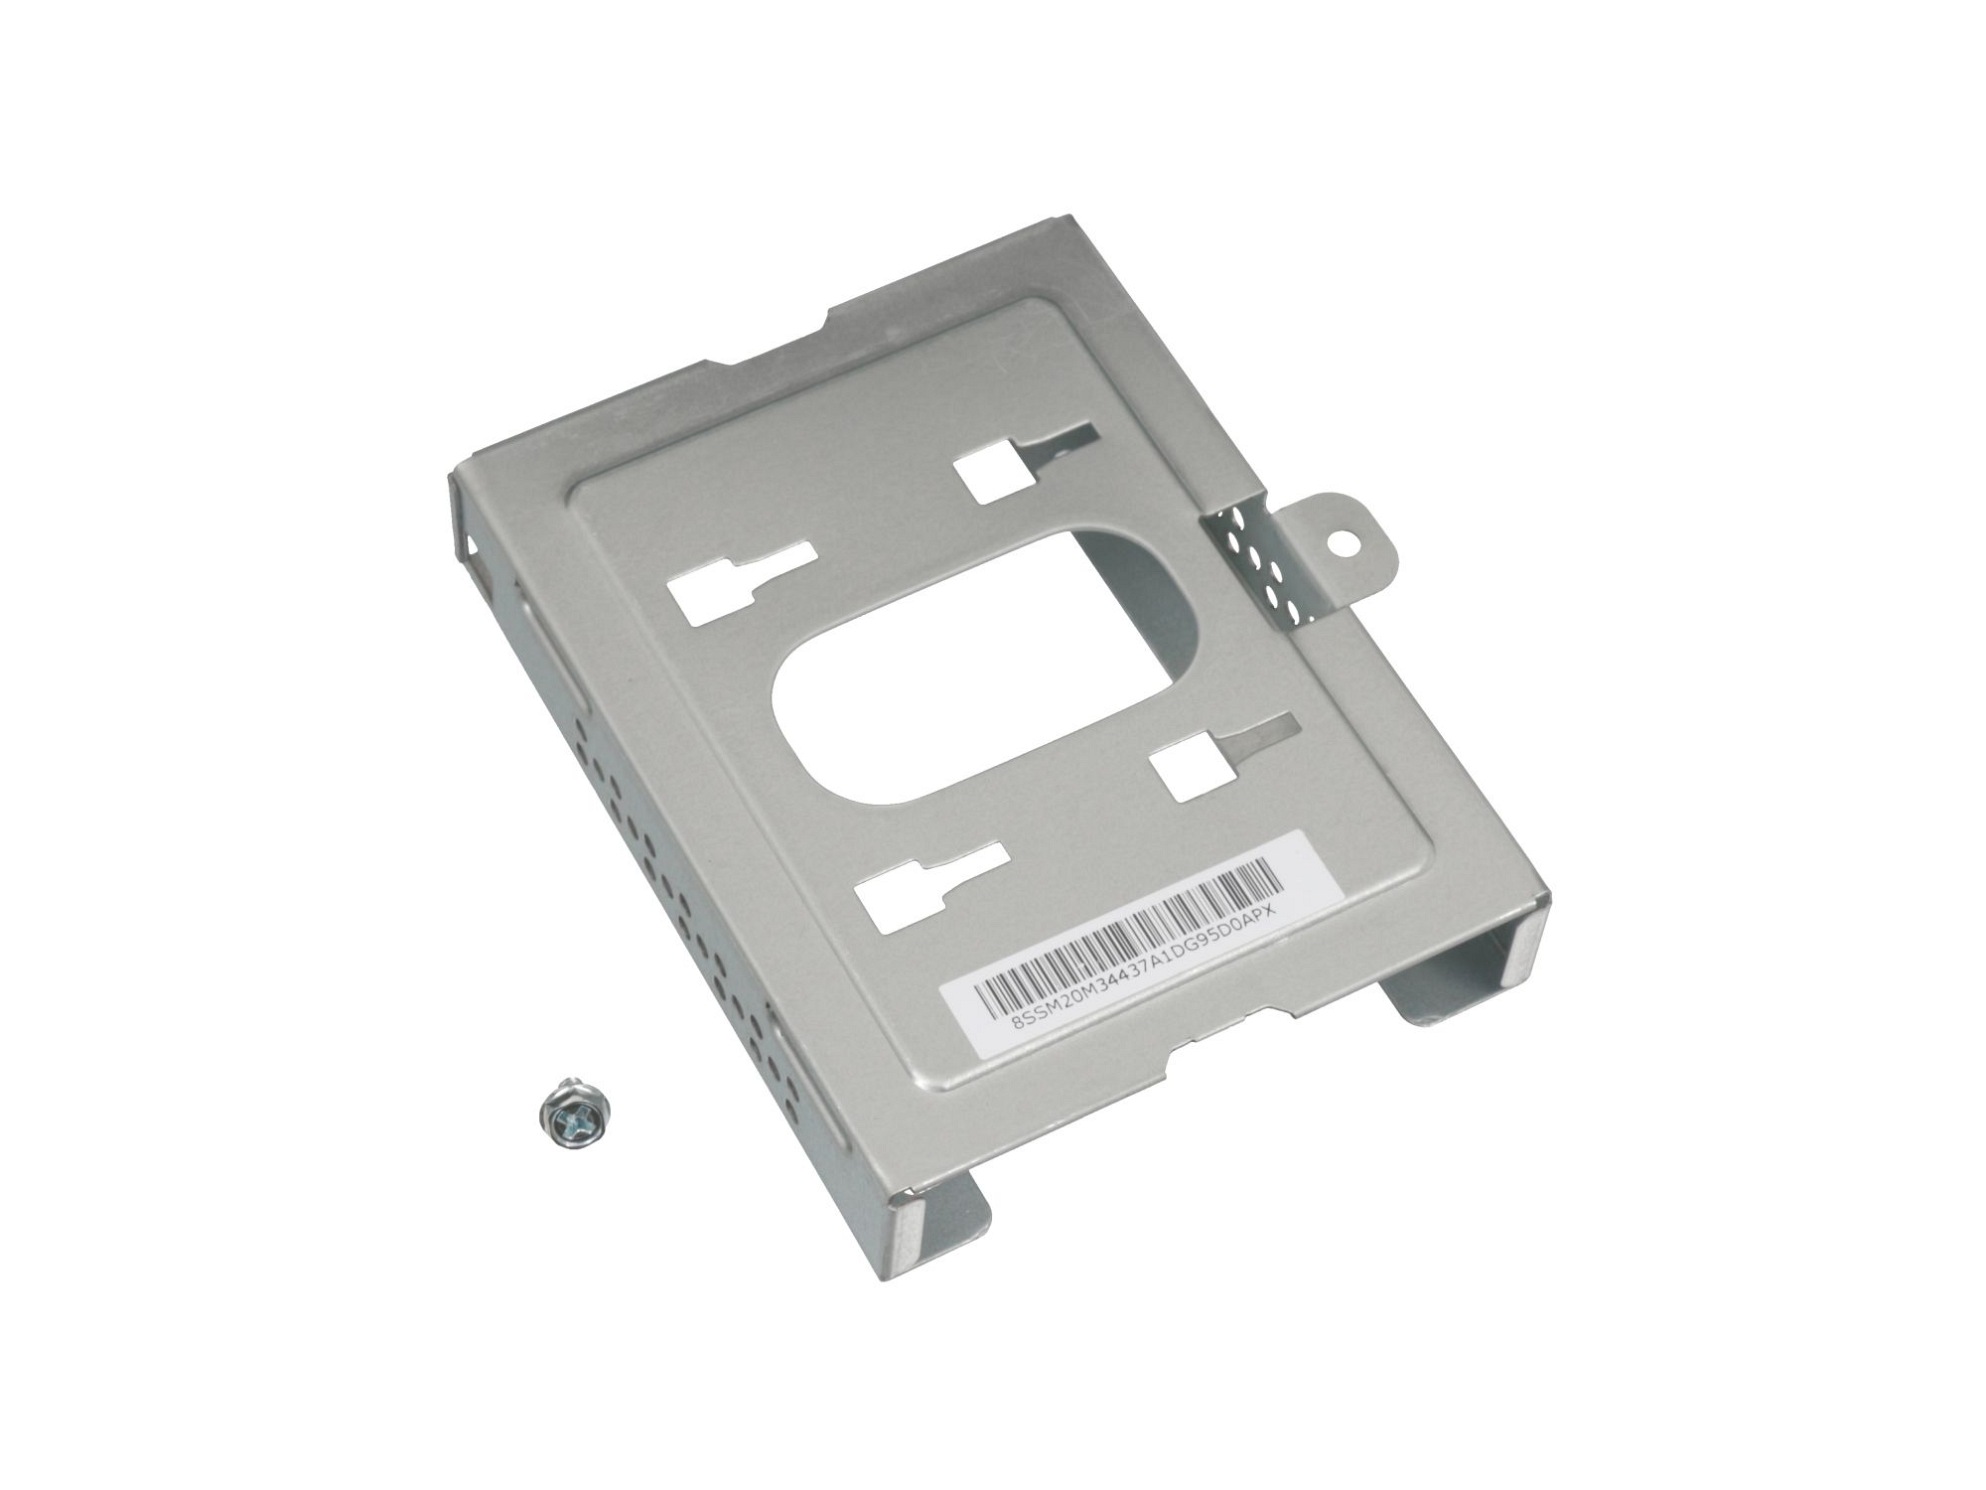 Festplatten-Einbaurahmen für den 1. Festplatten Schacht Original für Lenovo Thinkcentre M715S (10MB/10MC/10MD/10ME)